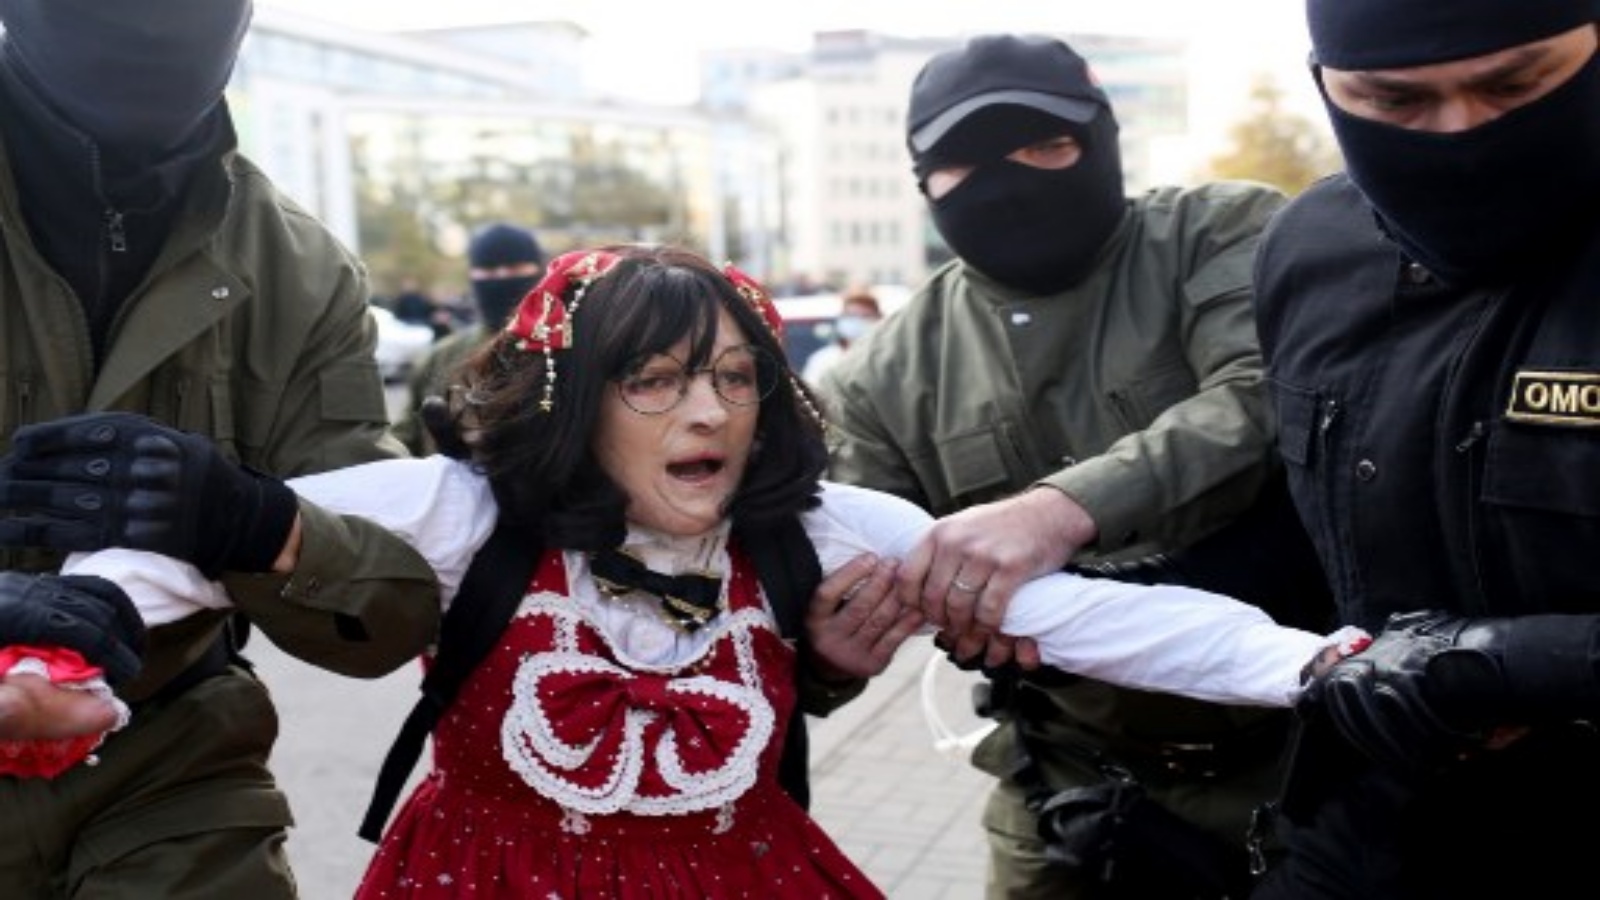 ضباط إنفاذ القانون يعتقلون امرأة خلال مسيرة للاحتجاج على نتائج الانتخابات الرئاسية البيلاروسية في مينسك في 19 سبتمبر 2020. 